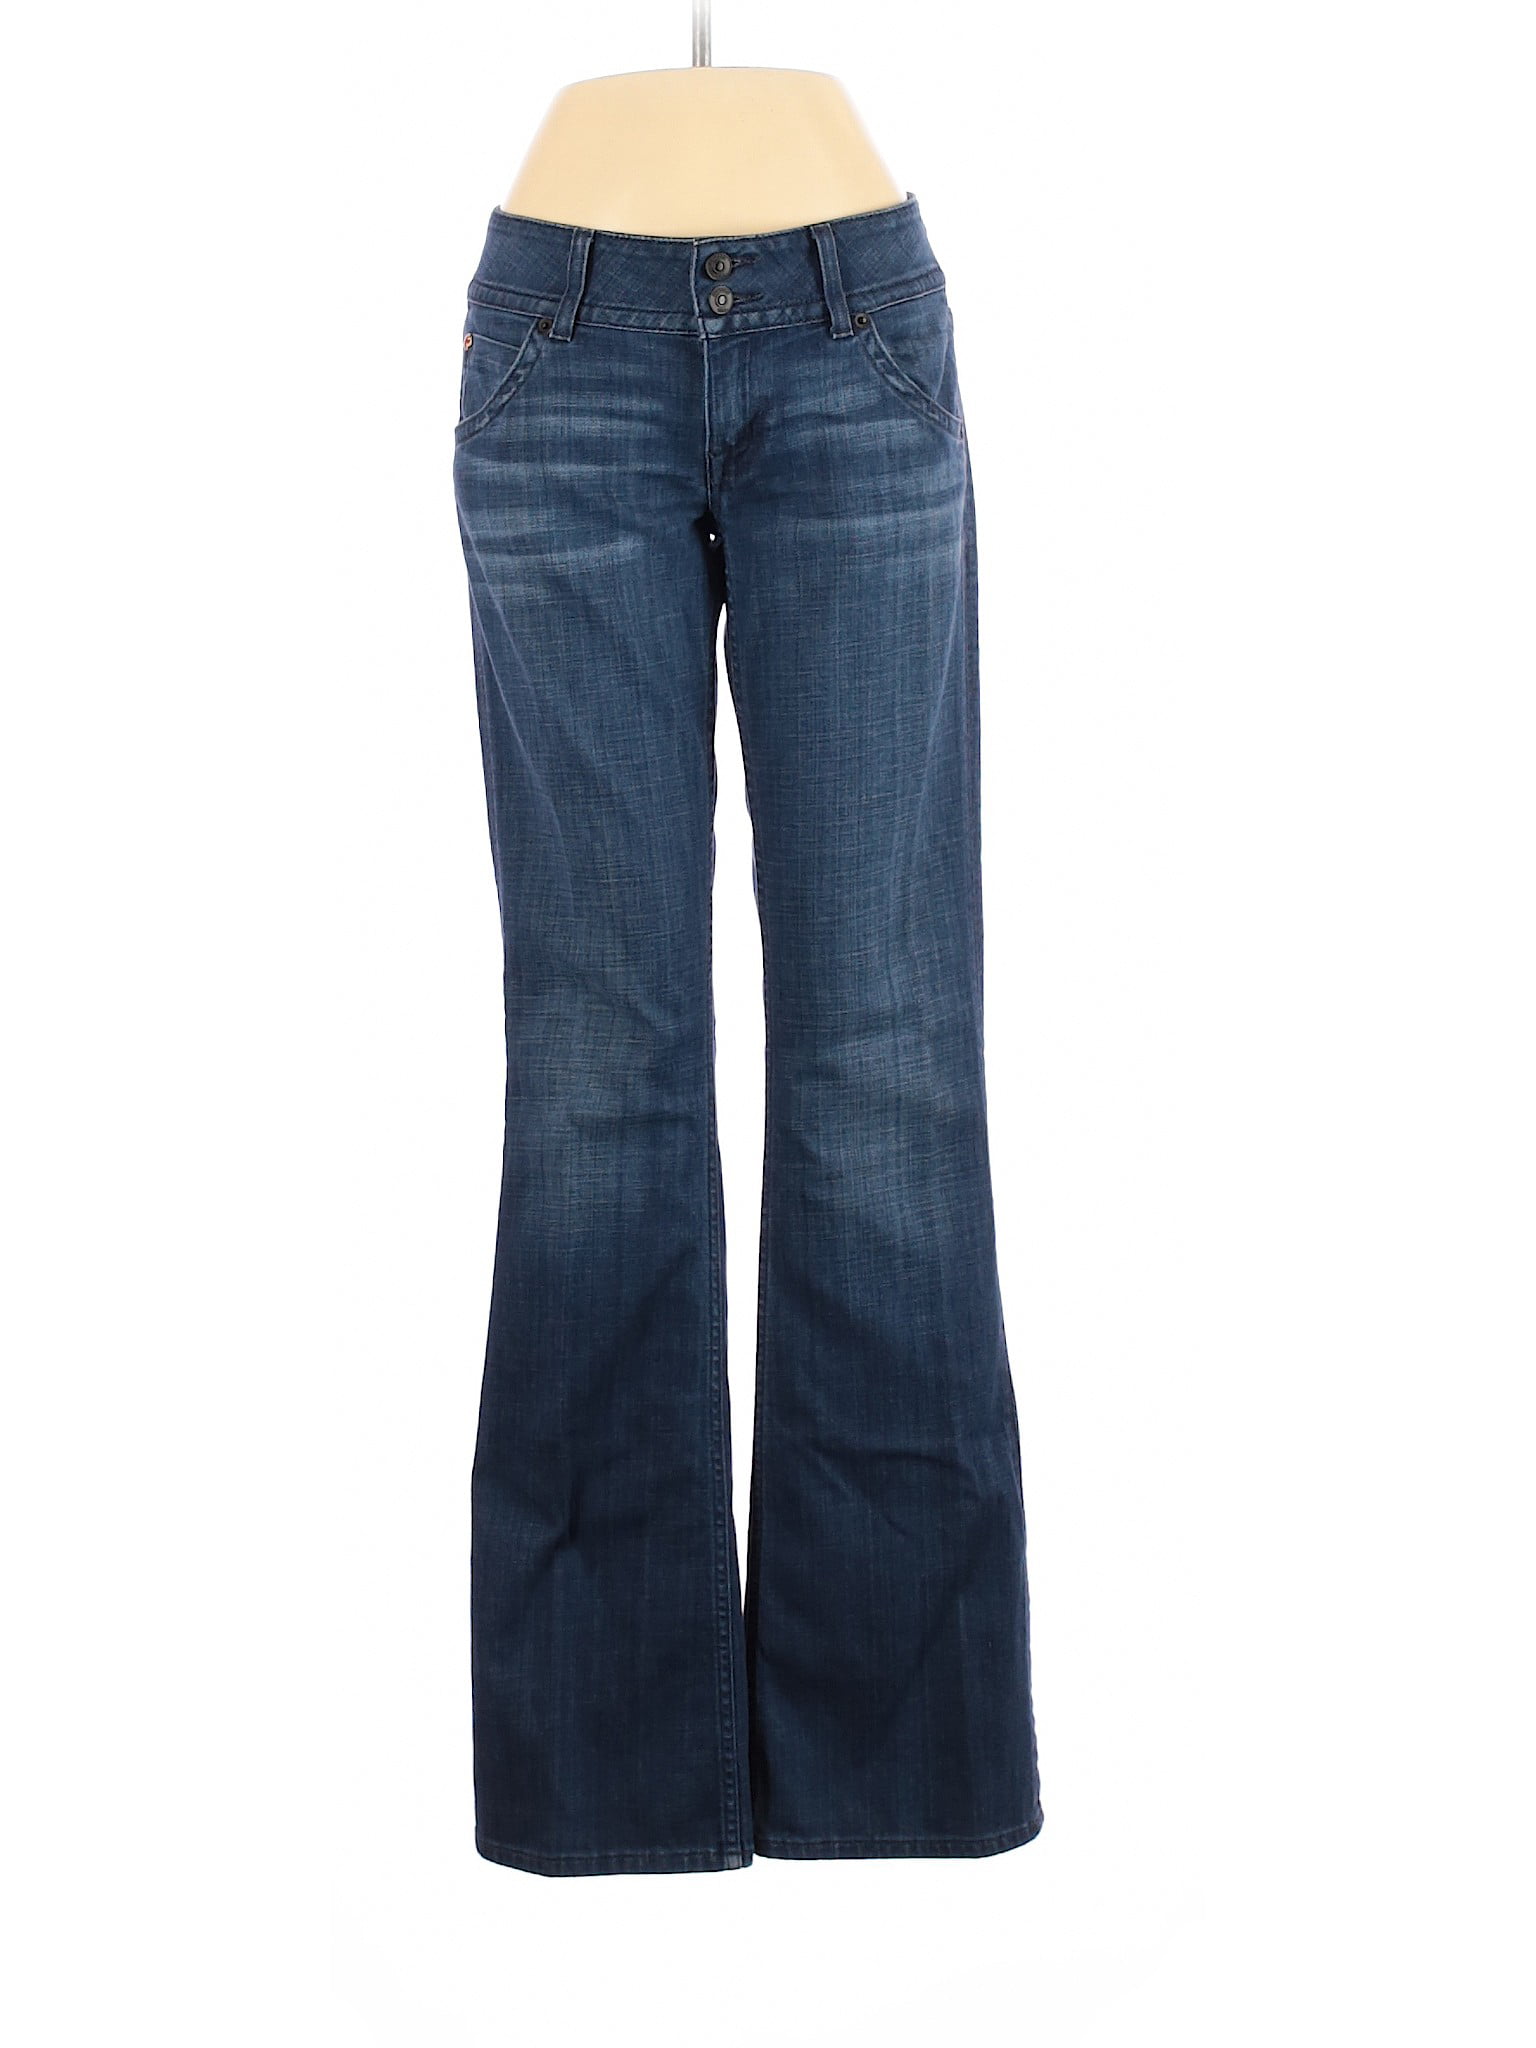 Hudson Jeans - Pre-Owned Hudson Jeans Women's Size 27W Jeans - Walmart ...